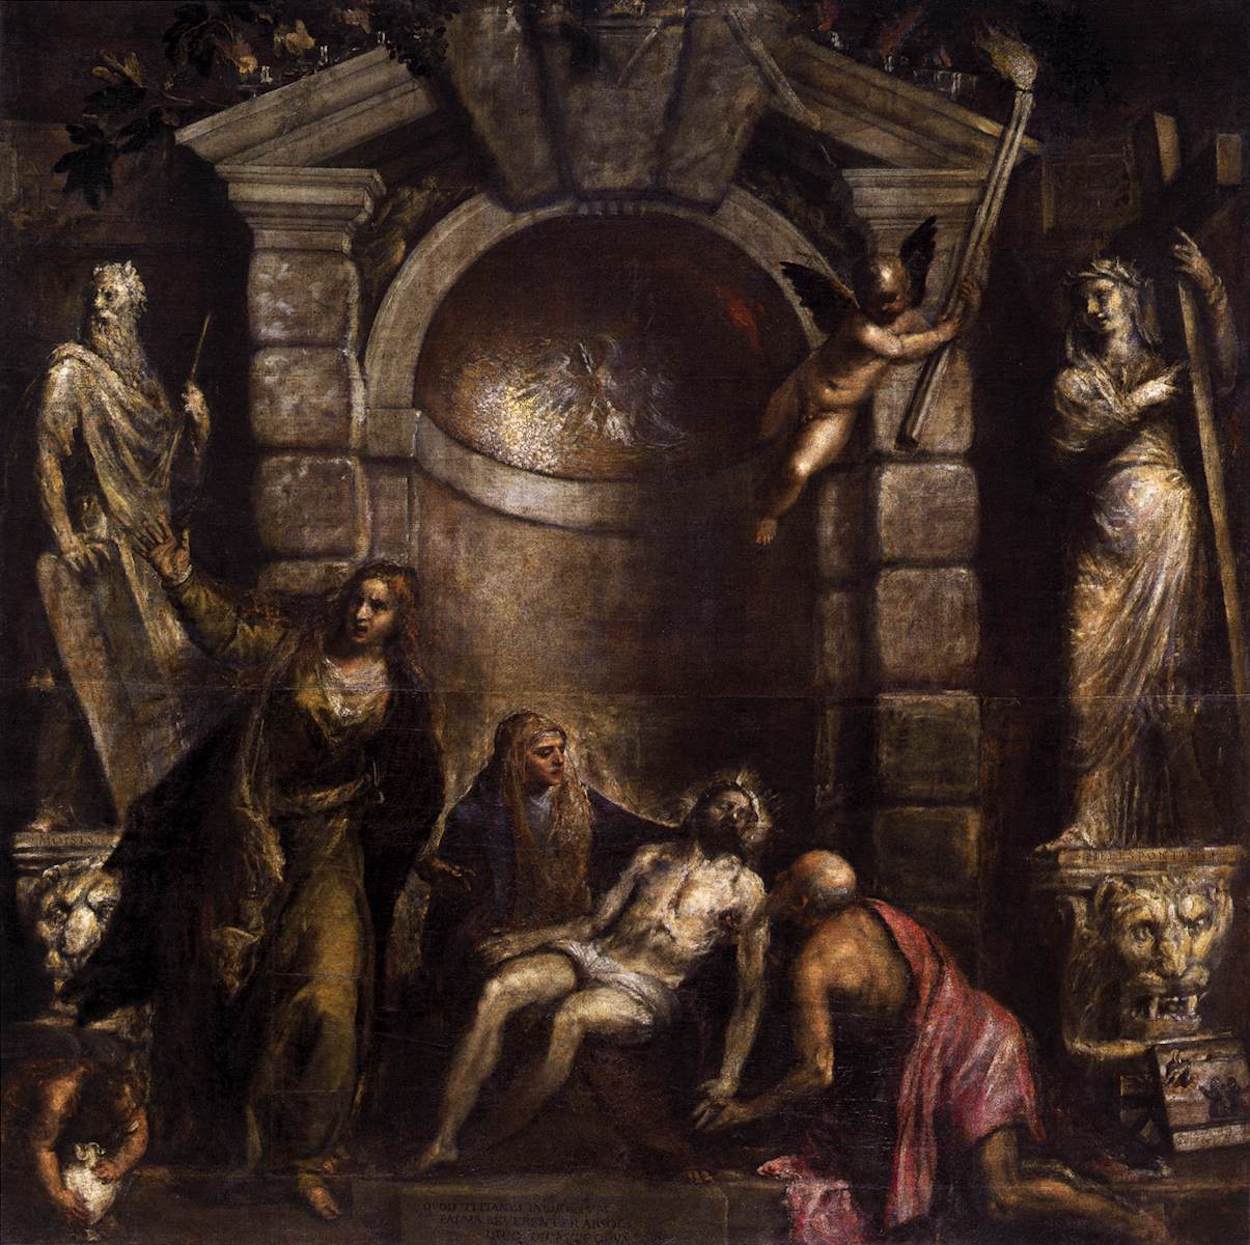 Pietà by Tiziano Vecellio - 1576 circa - 389 × 351 cm 